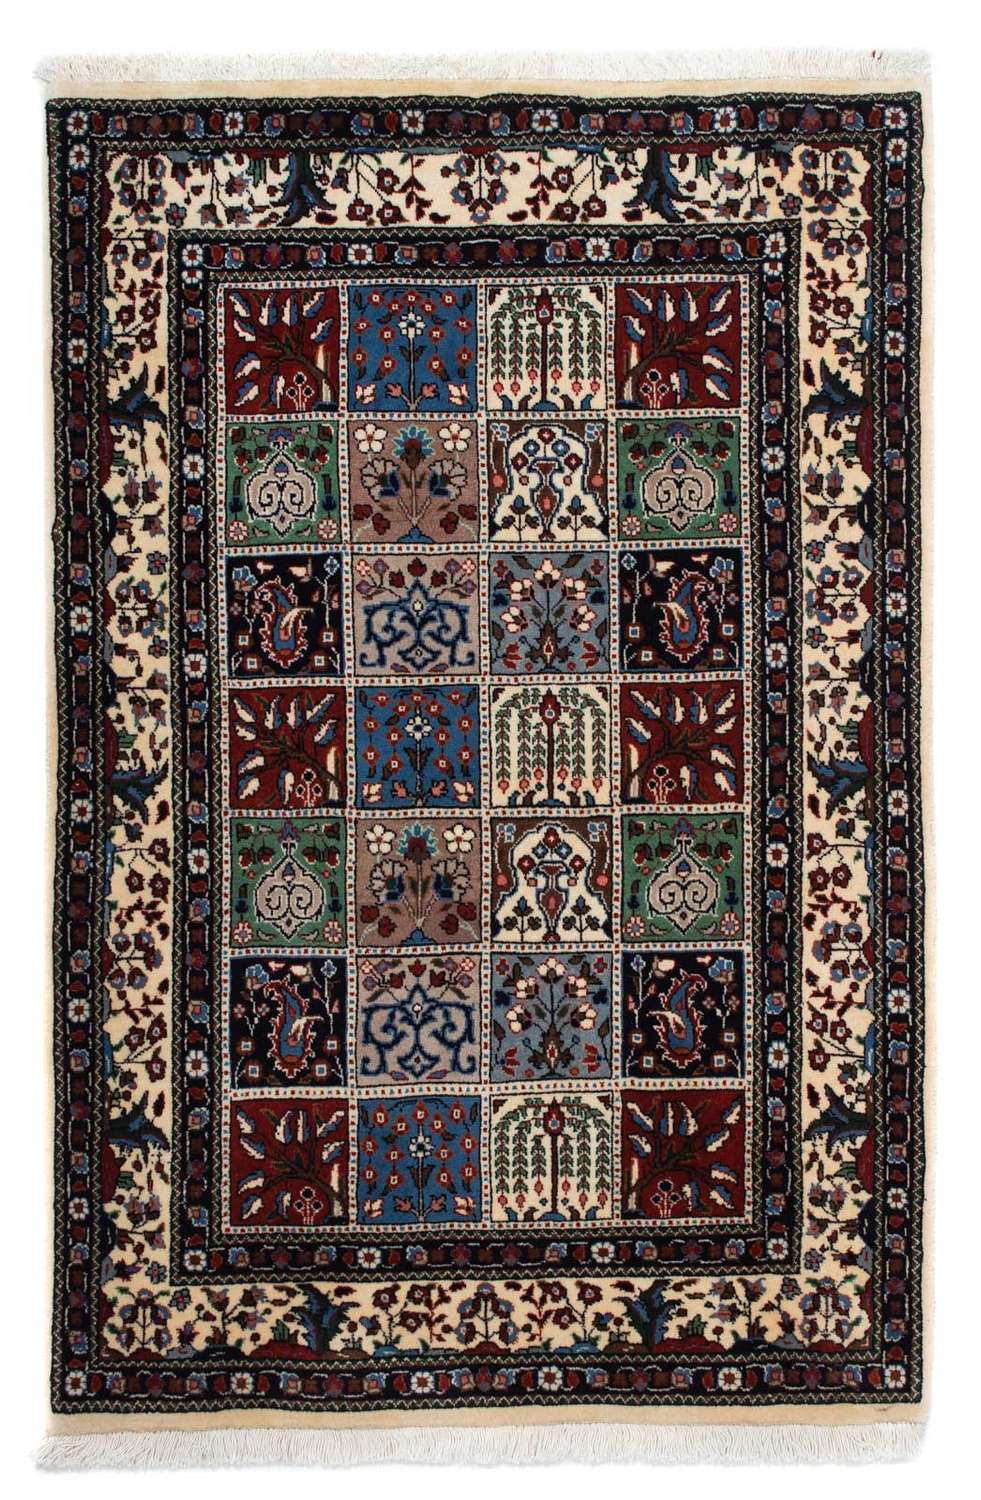 Persisk teppe - klassisk - 140 x 96 cm - flerfarget